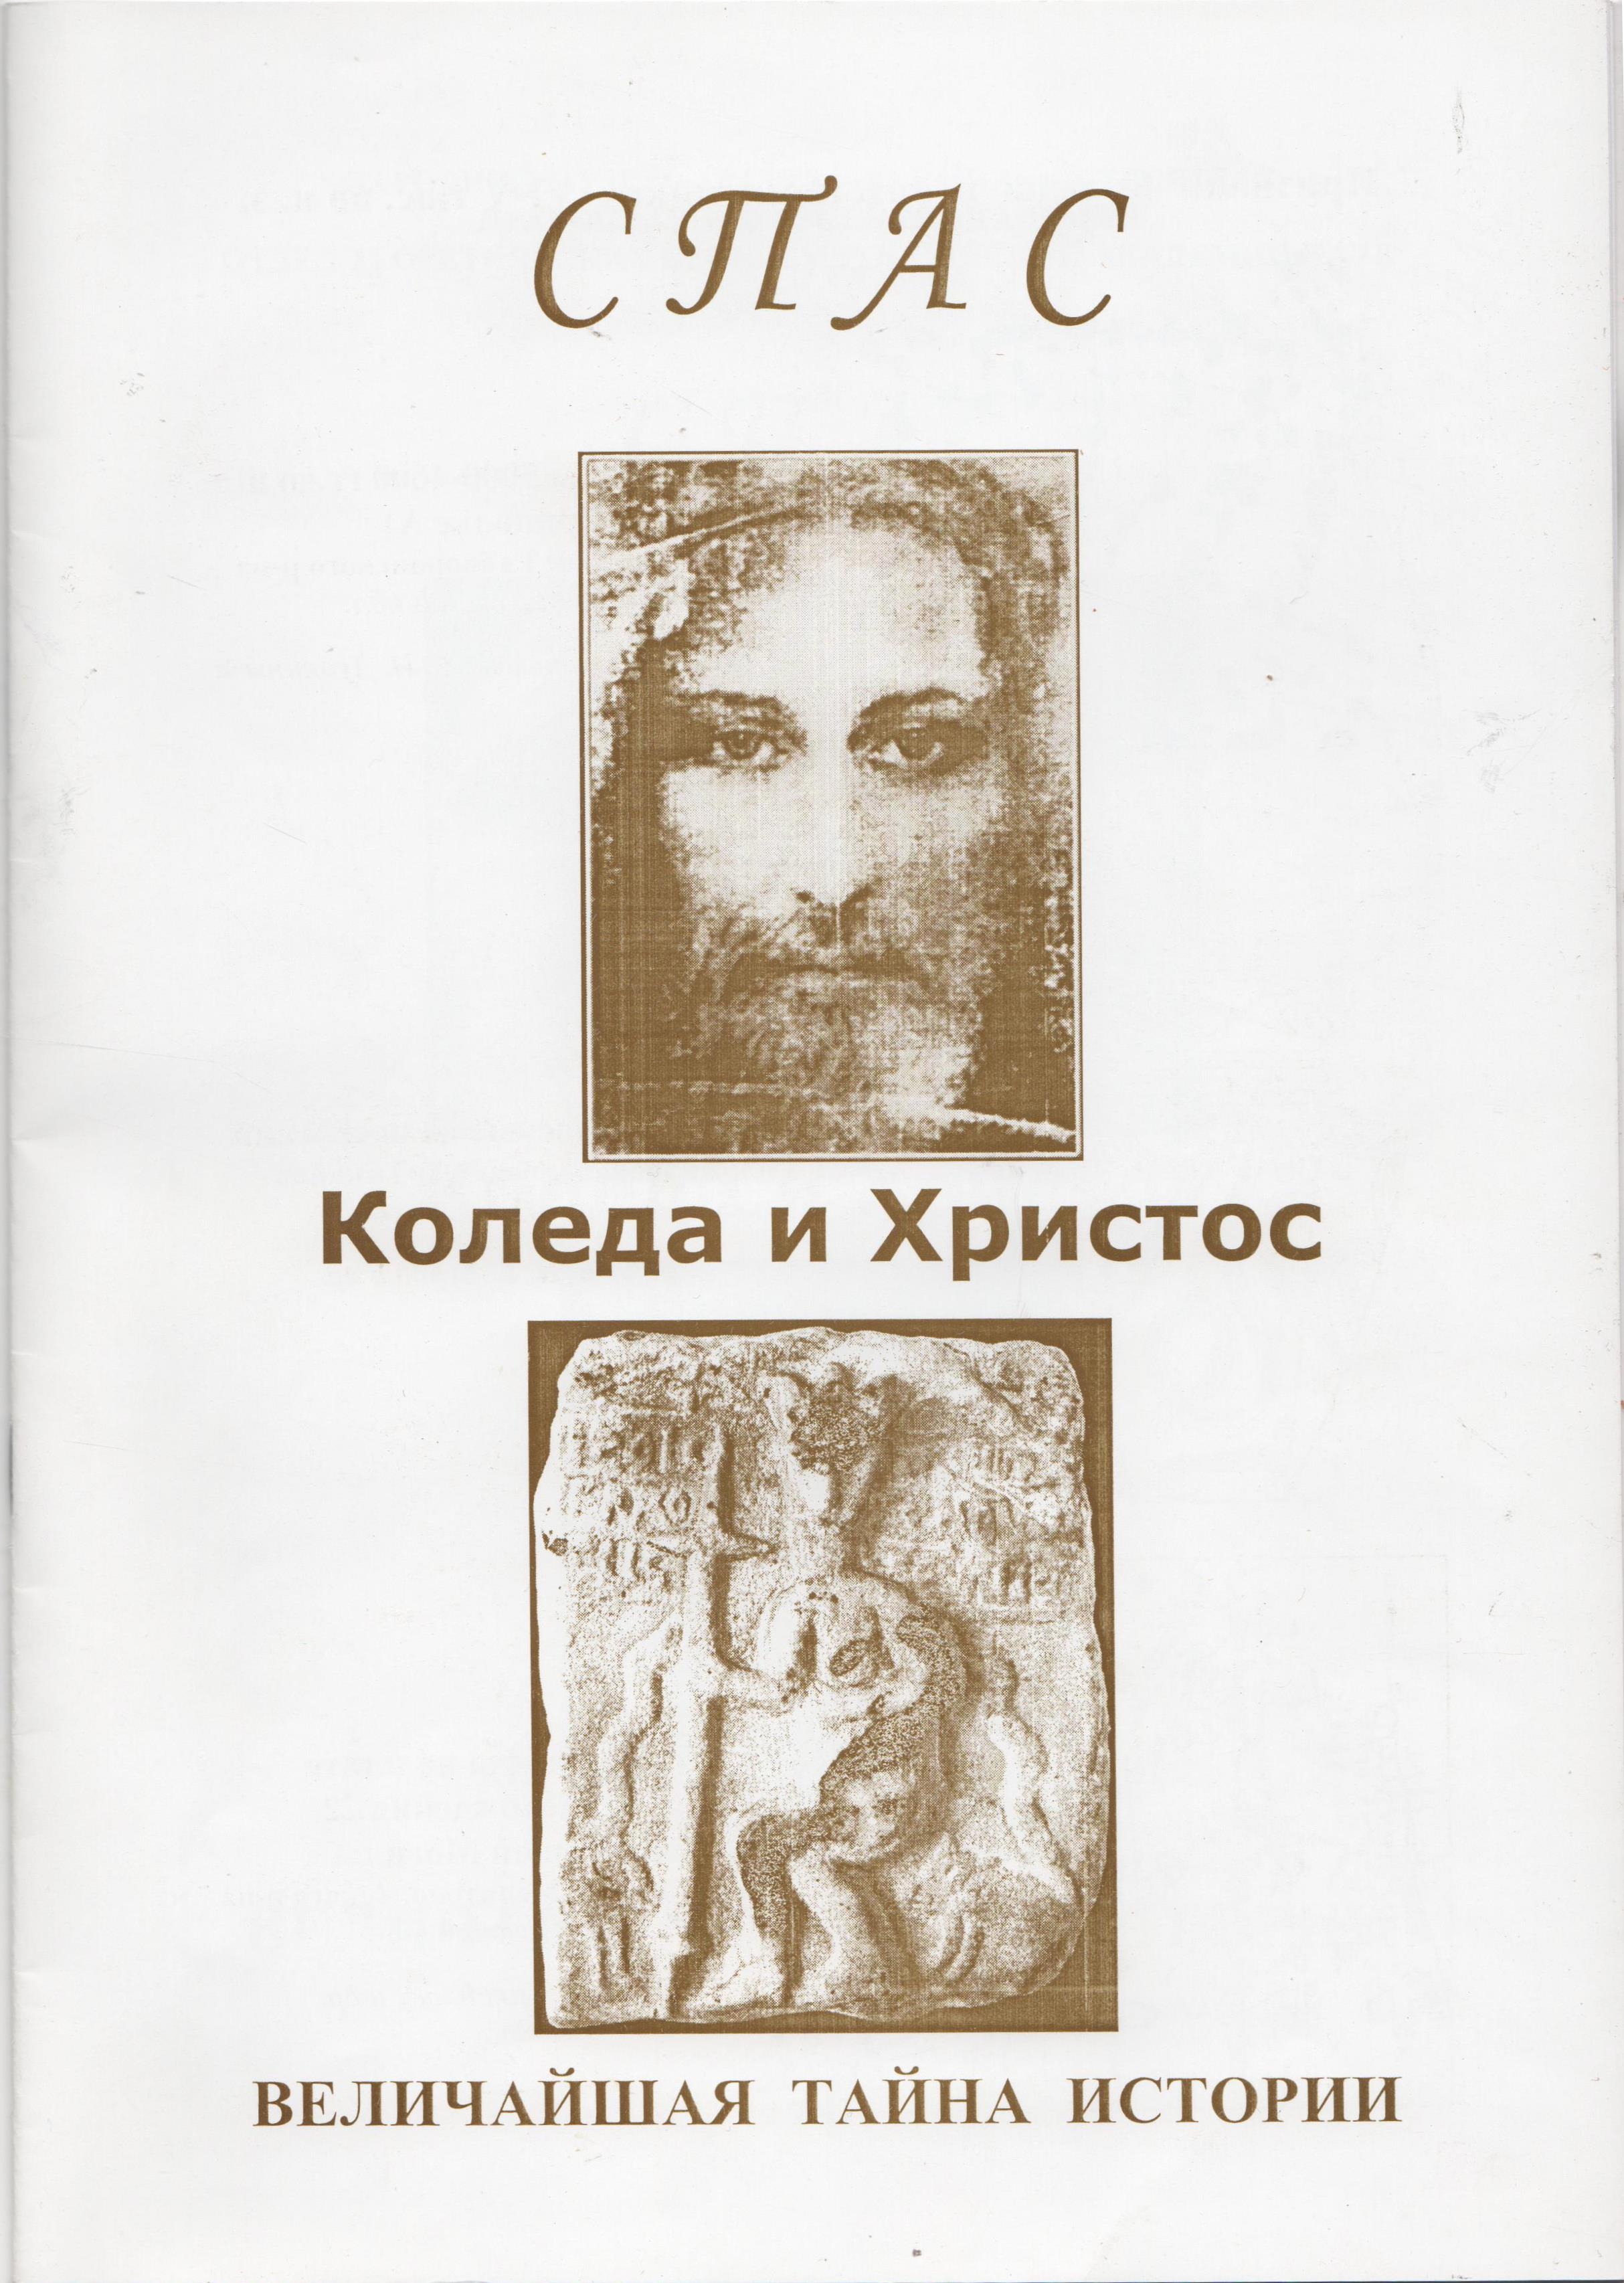 Книга "Шилов Ю. Спас : Коледа и Христос. Величайшая тайна истории"